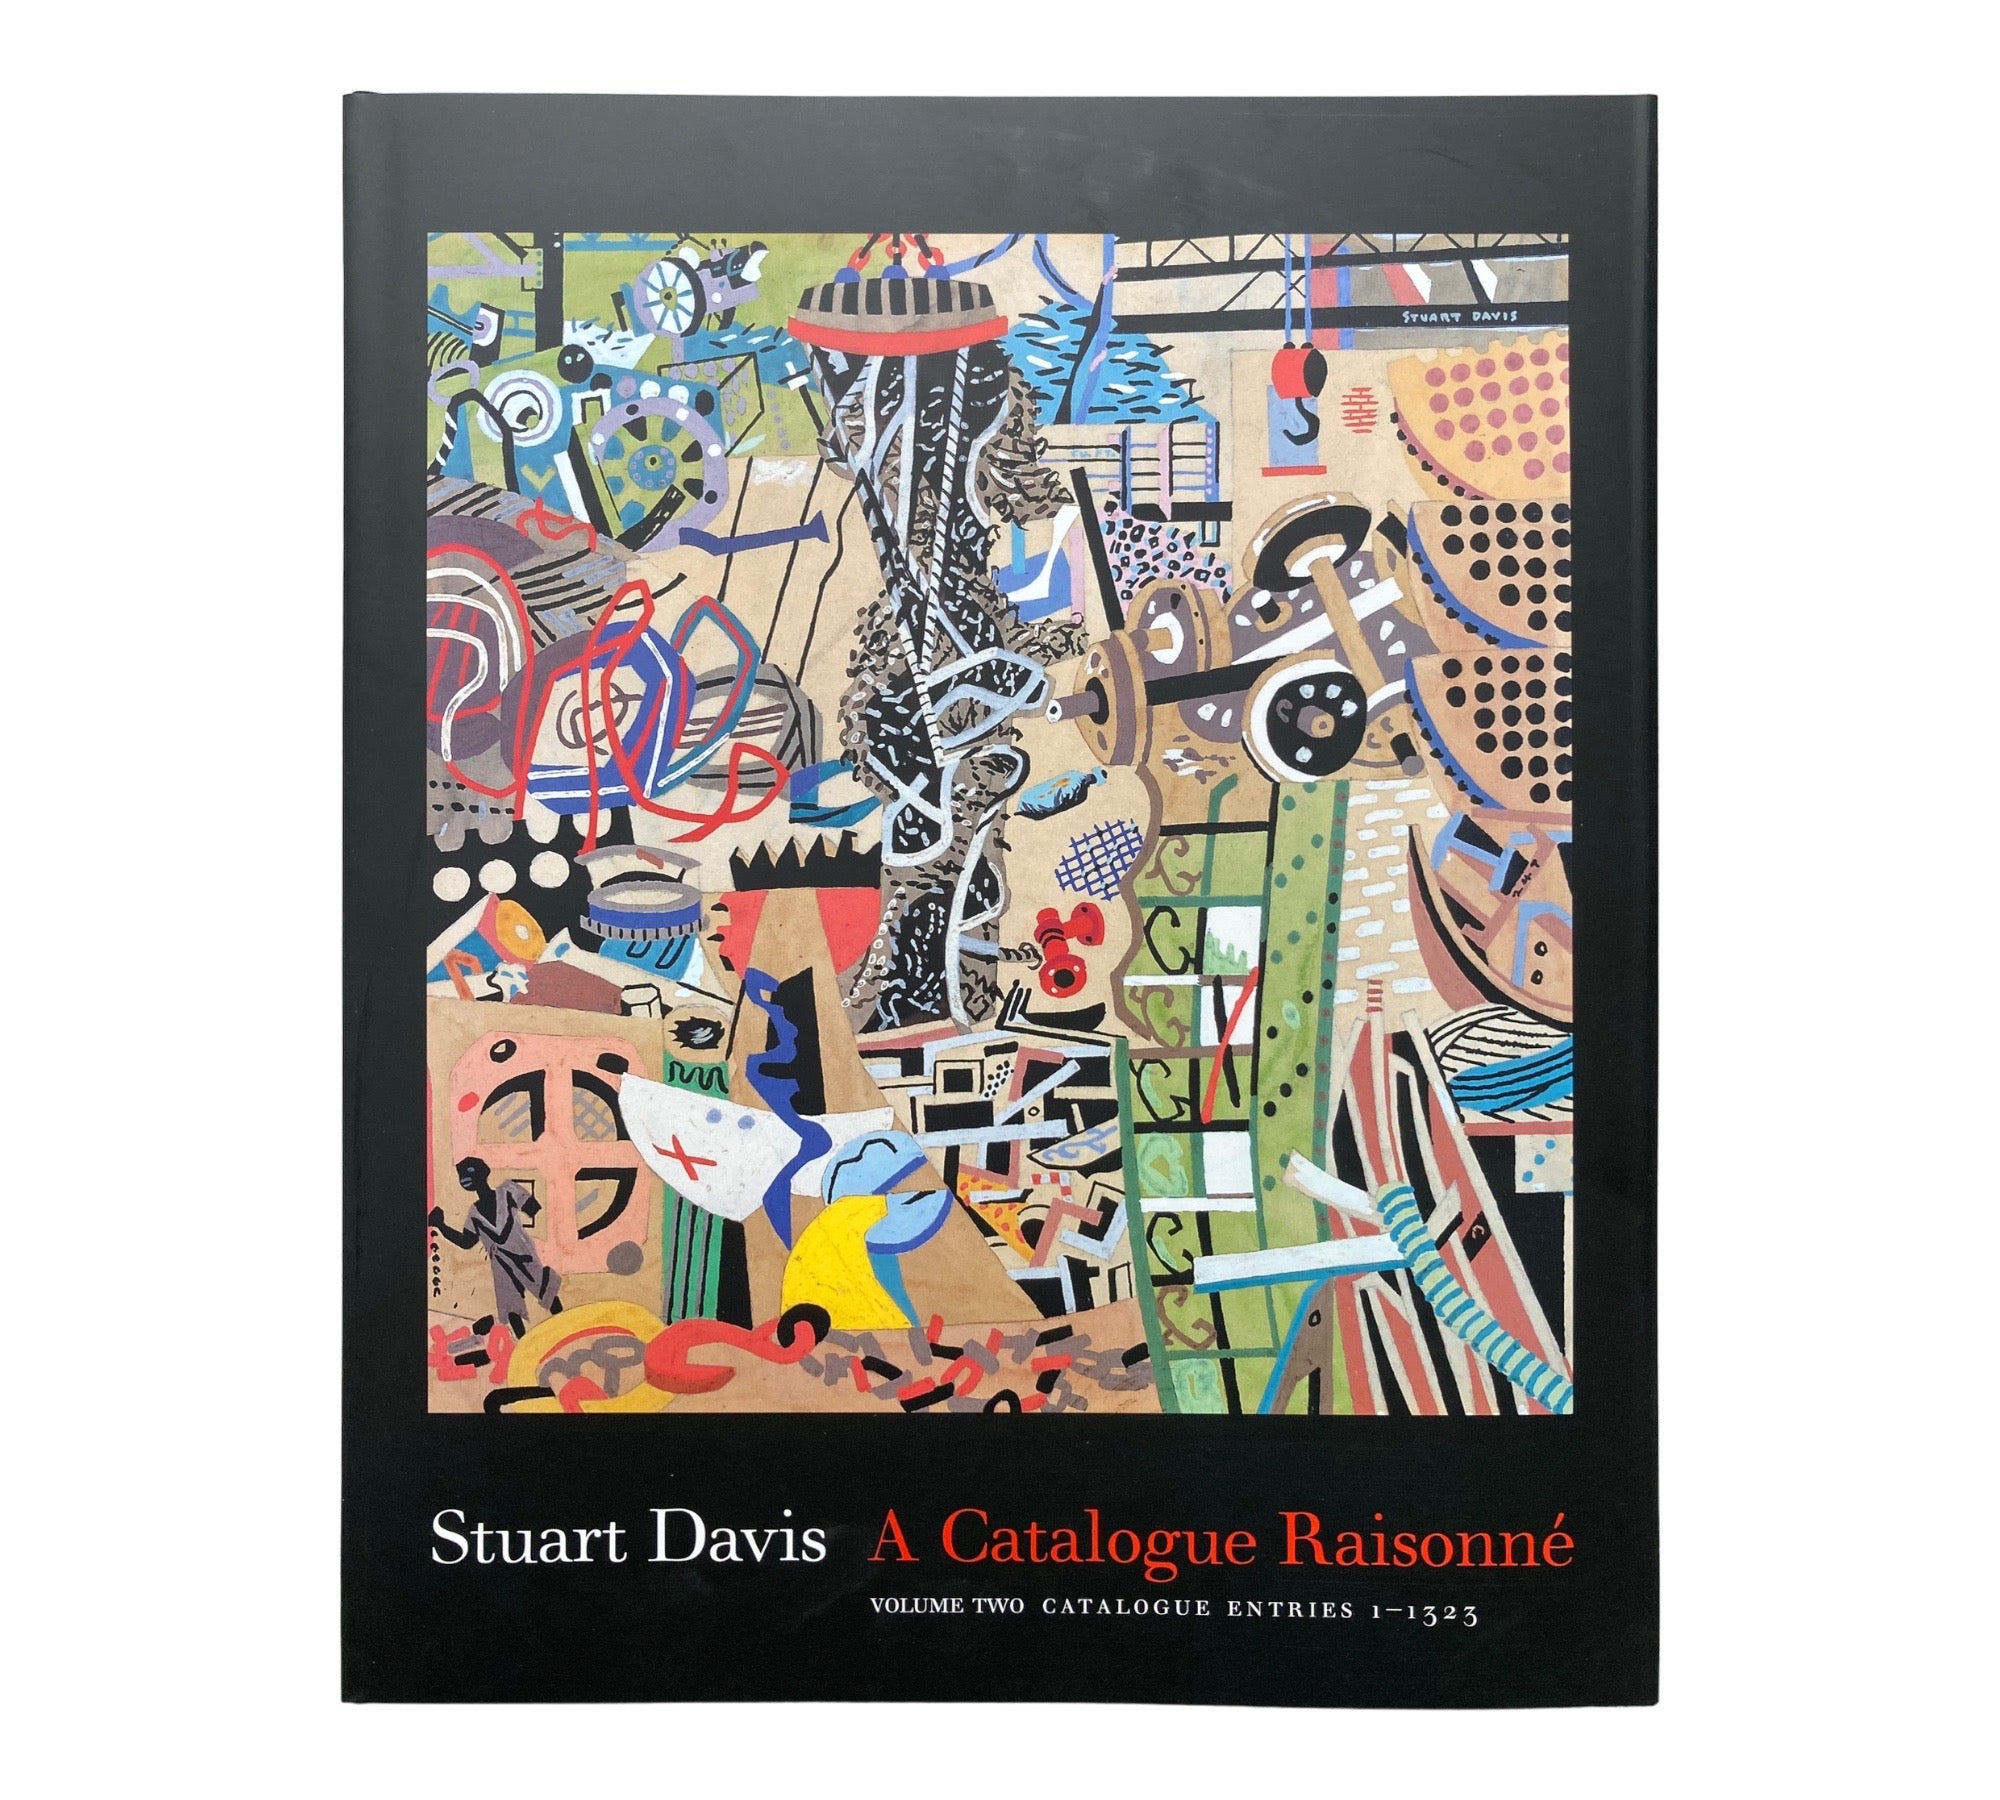 Stuart Davis: A Catalogue Raisonné